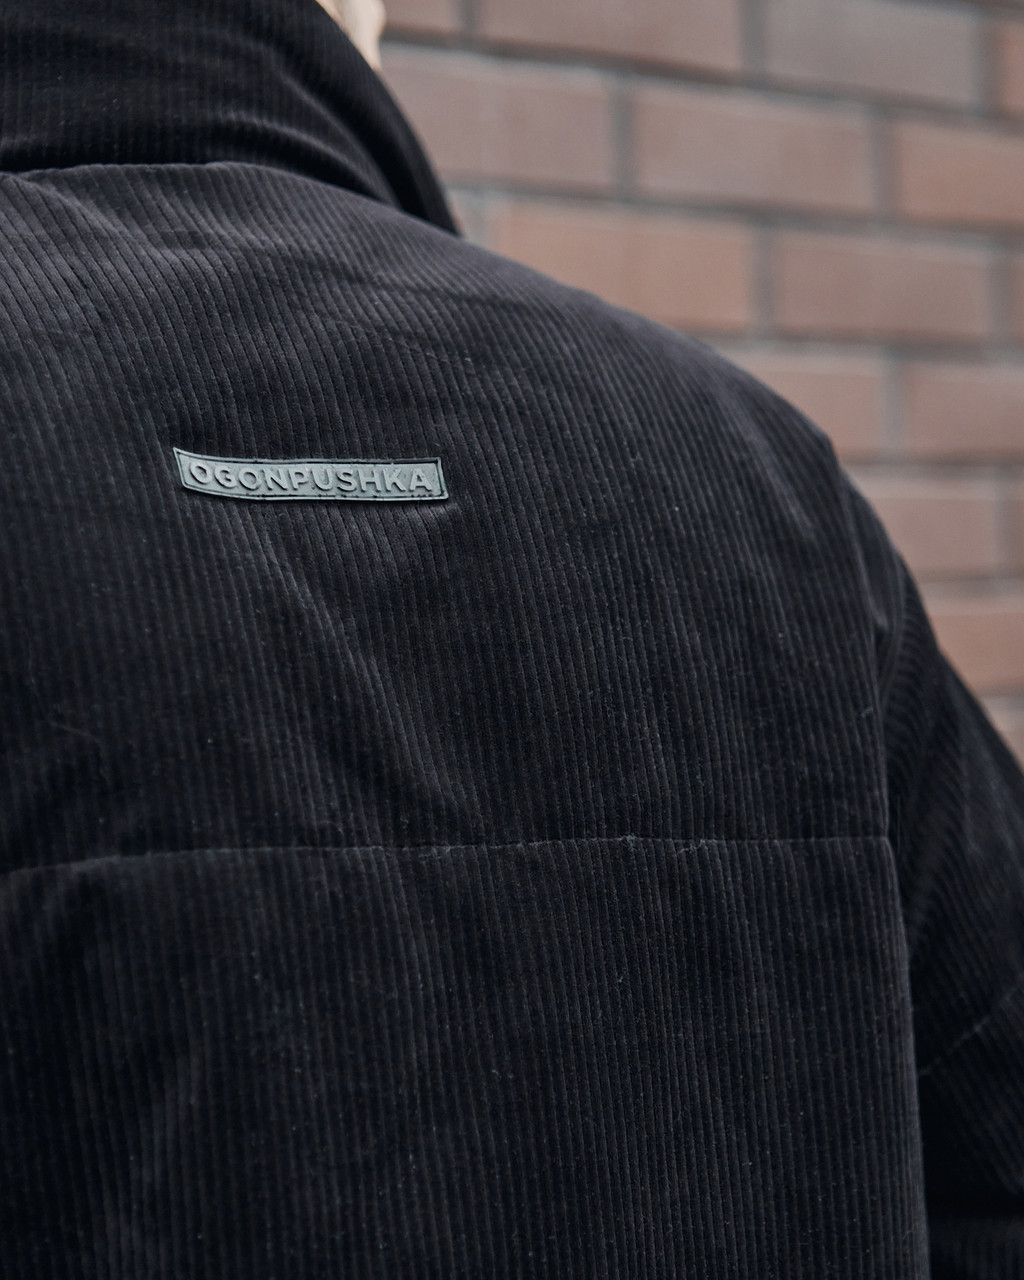 Куртка демісезонна чоловіча OGONPUSHKA Yard чорна вельветова Гармата Вогонь - Фото 7